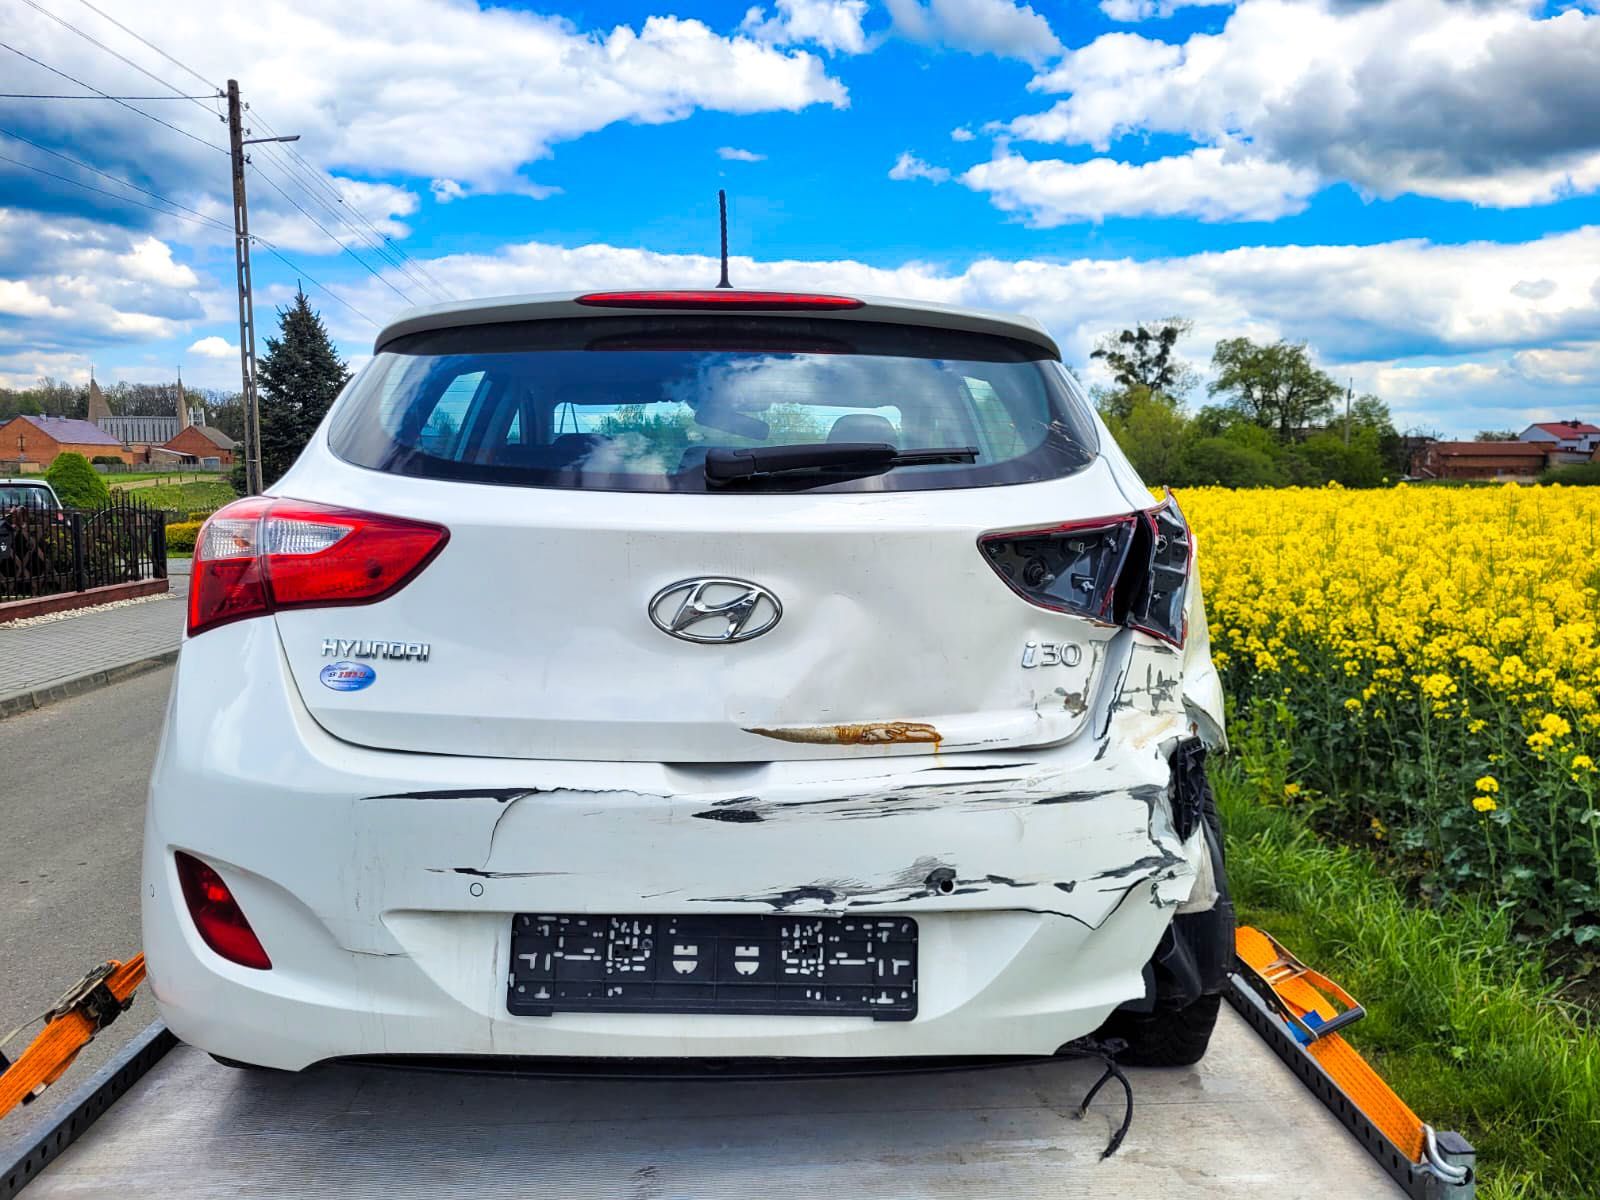 Hyundai i30 uszkodzony